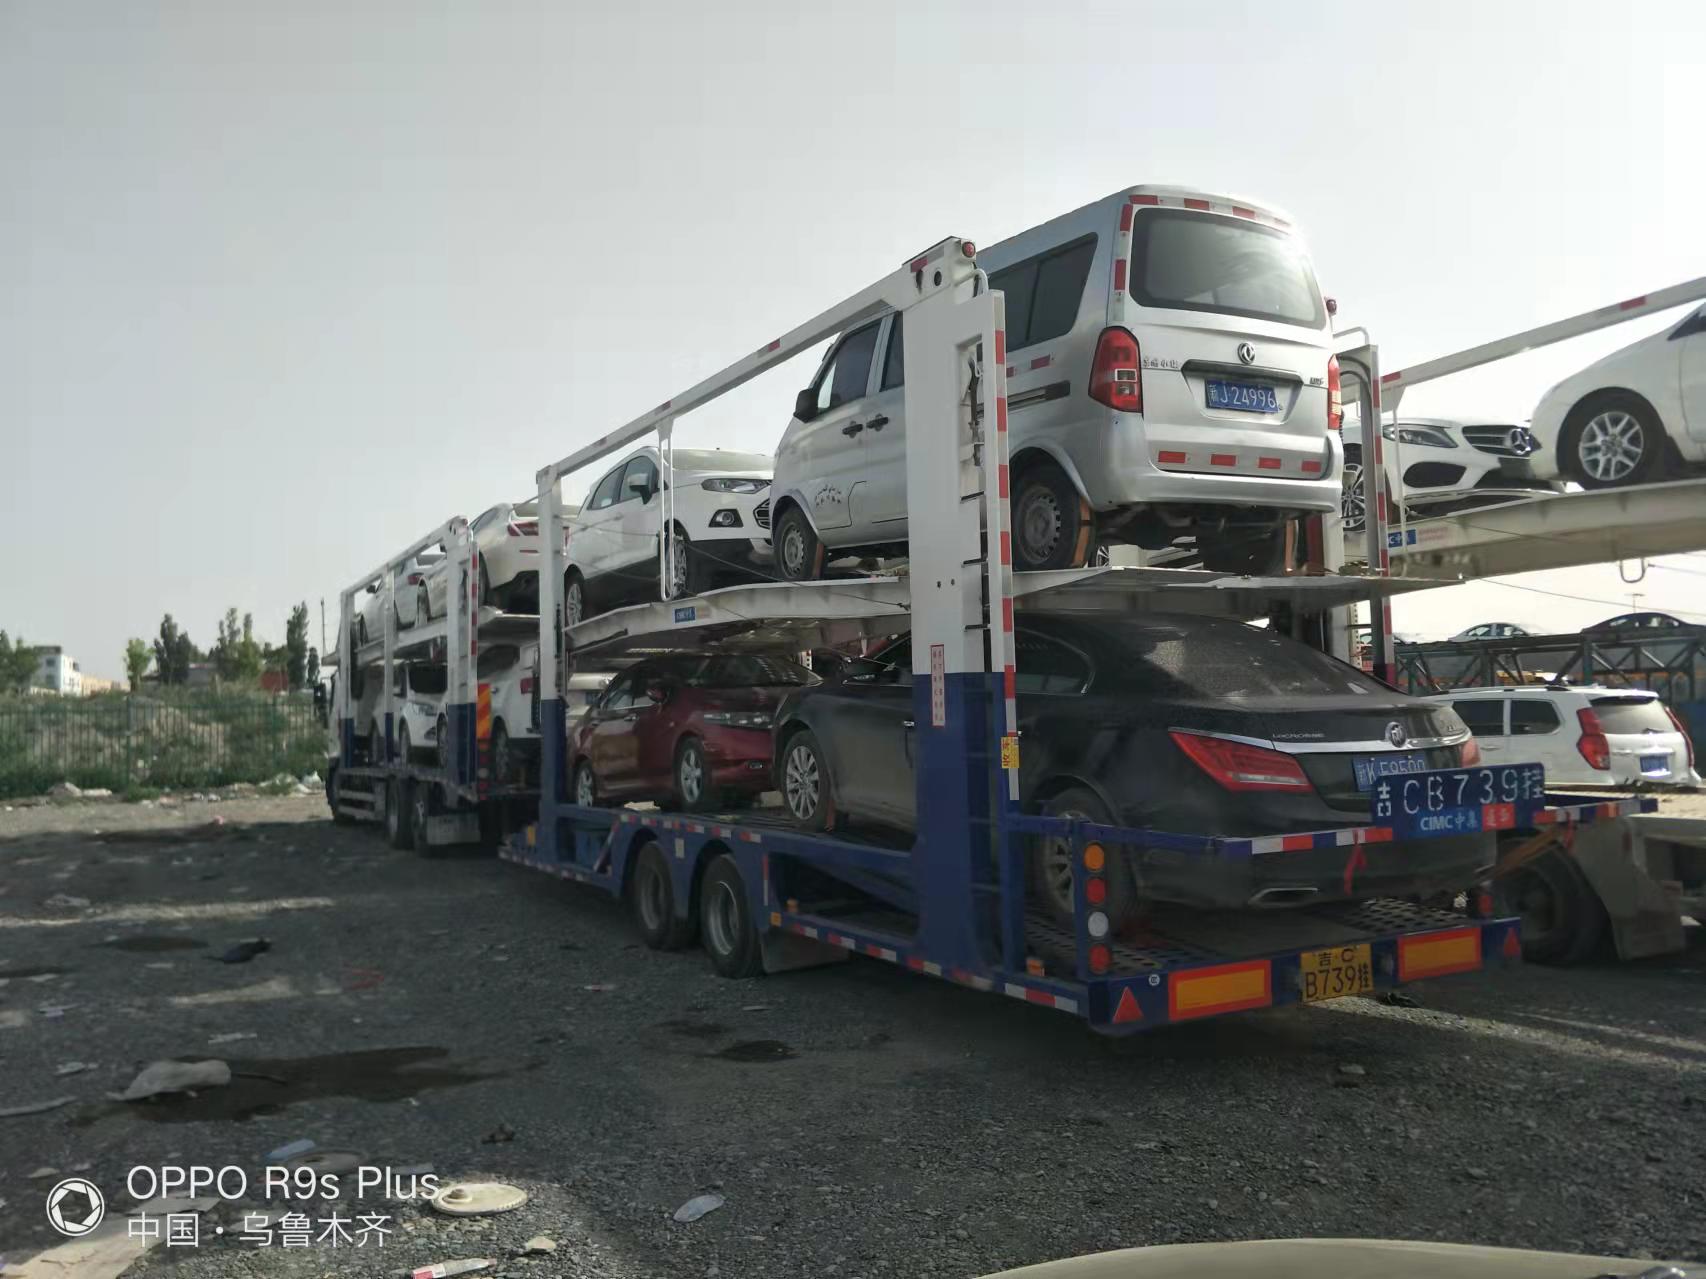 新疆克拉玛依汽车托运公司轿车托运运车帮汽车托运报价托运小车